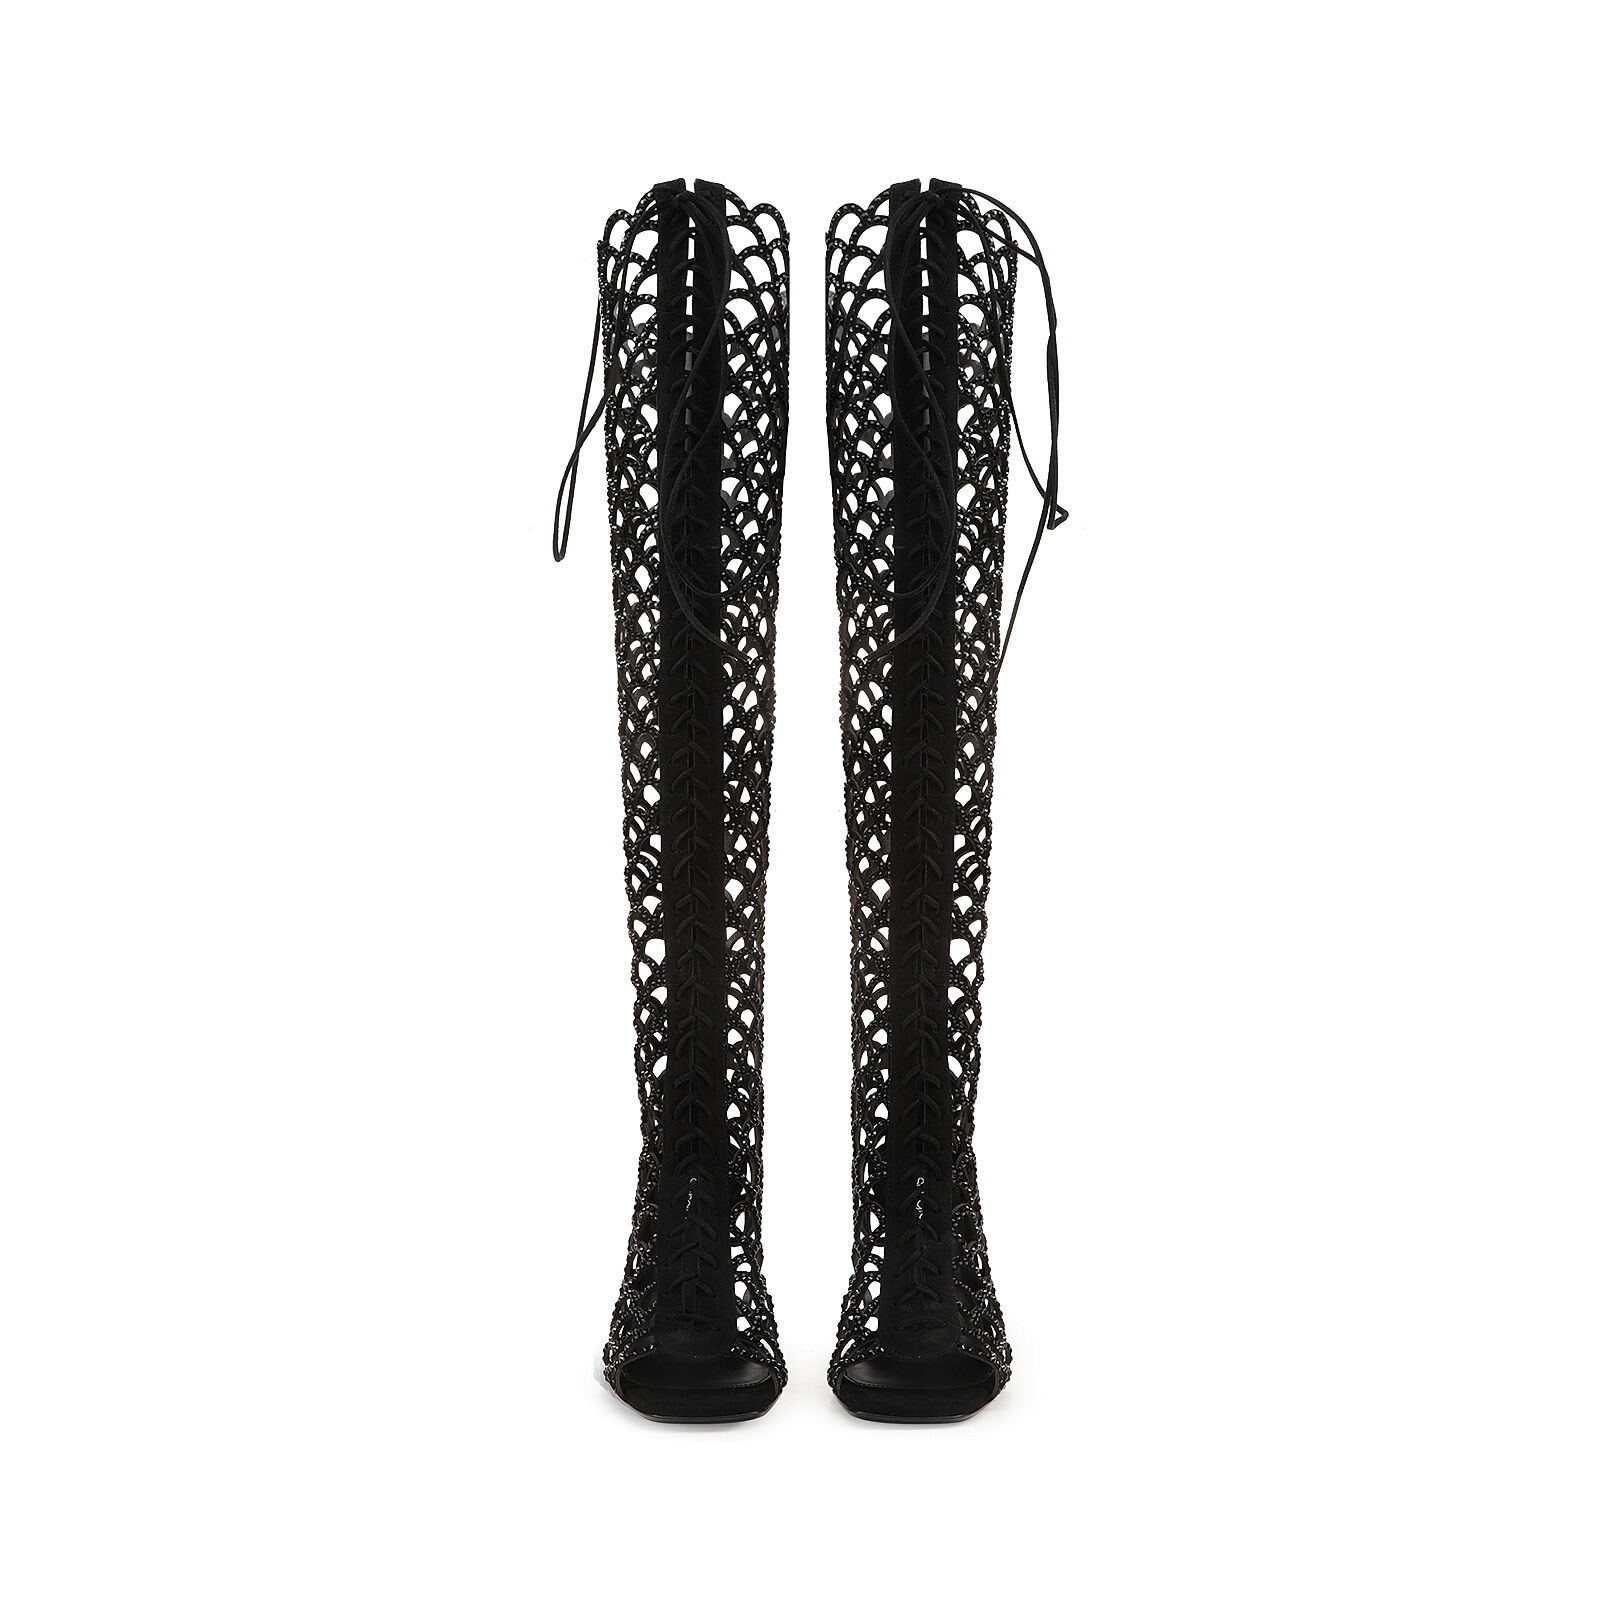 ブーツ ブラック ハイヒール: 105mm, sr Mermaid - Boots Black